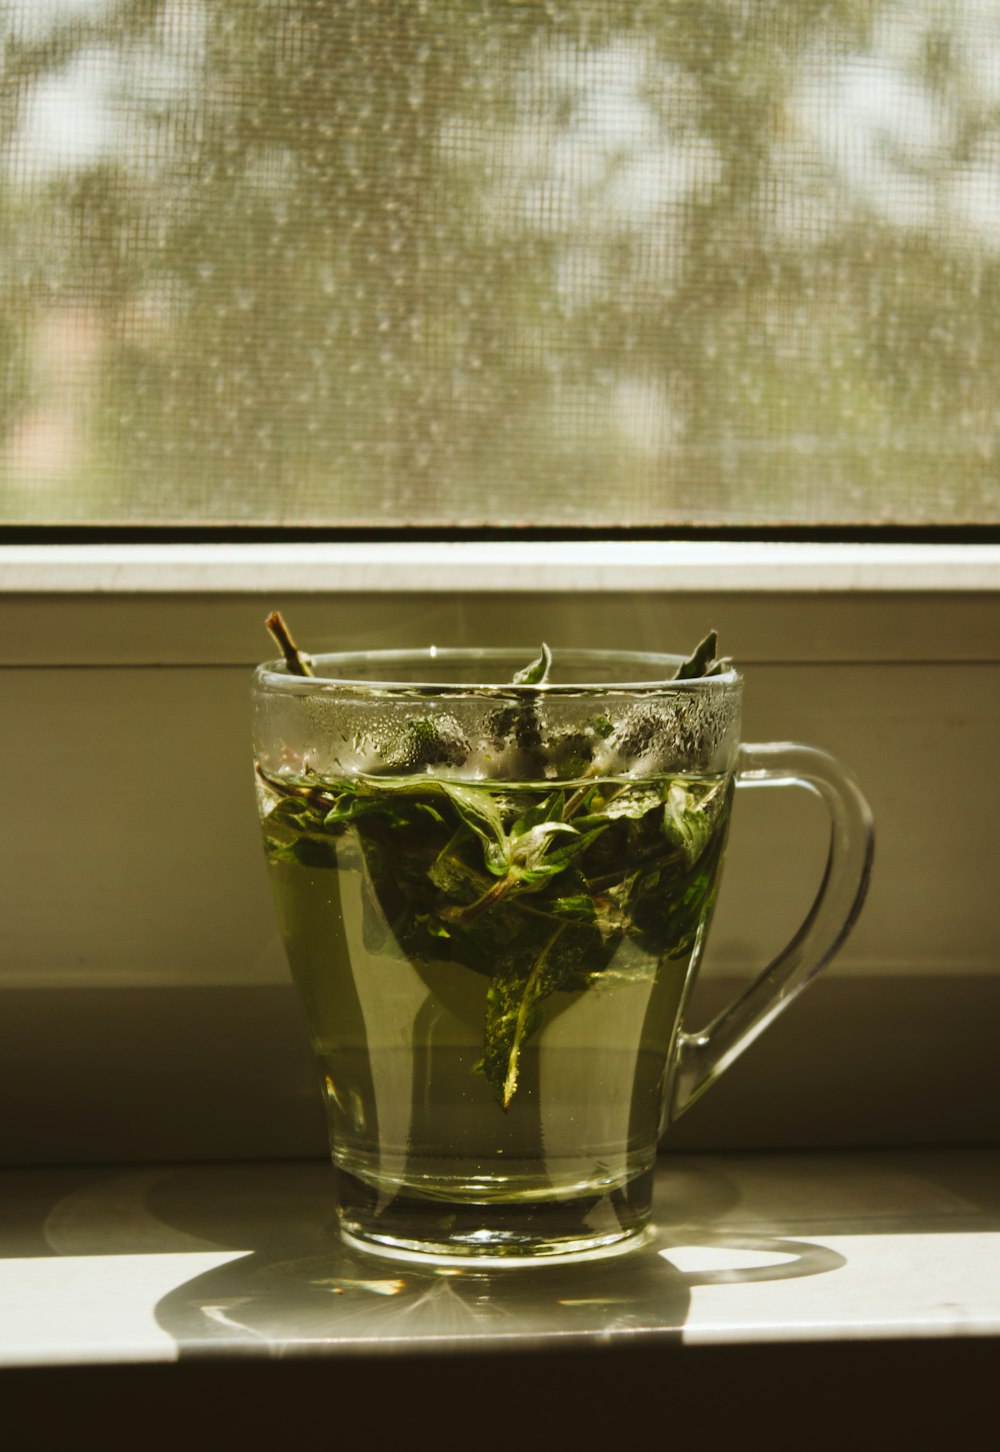 透明なガラスのマグカップに入った緑の葉